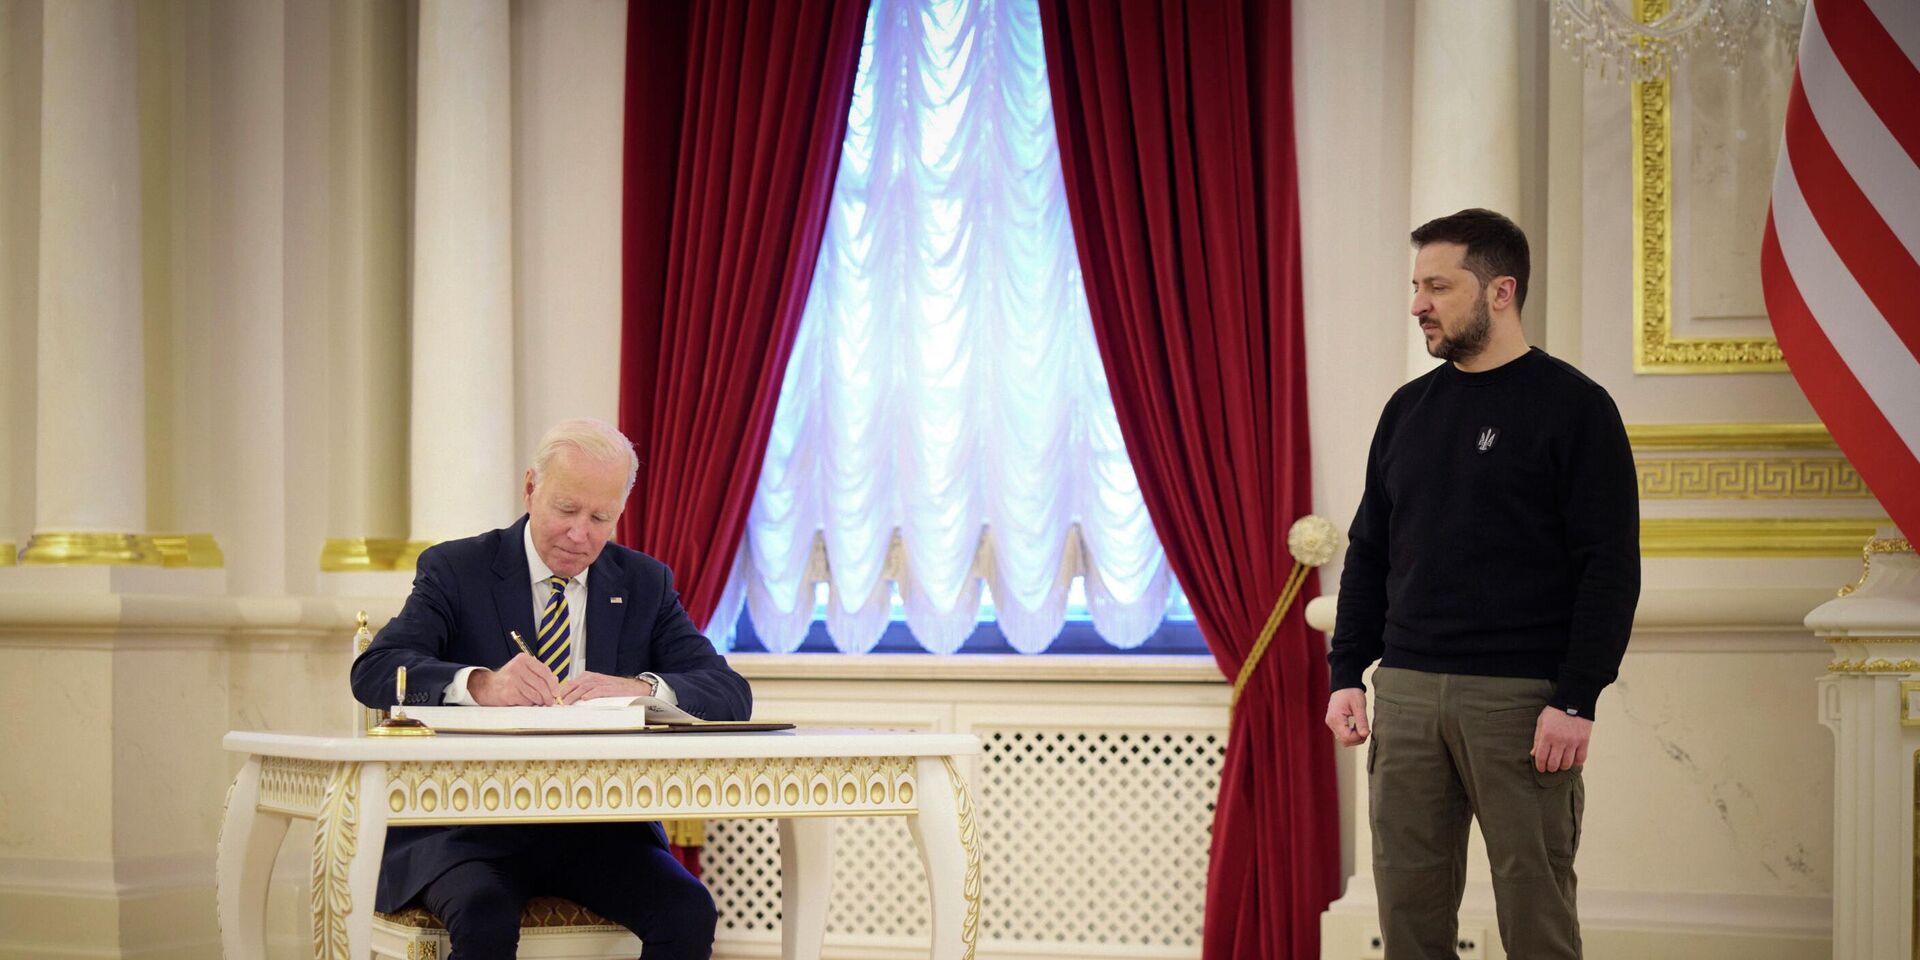 Президент США Джо Байден и президент Украины Владимир Зеленский в Киеве, Украина. 20 февраля 2023 года - ИноСМИ, 1920, 22.08.2023